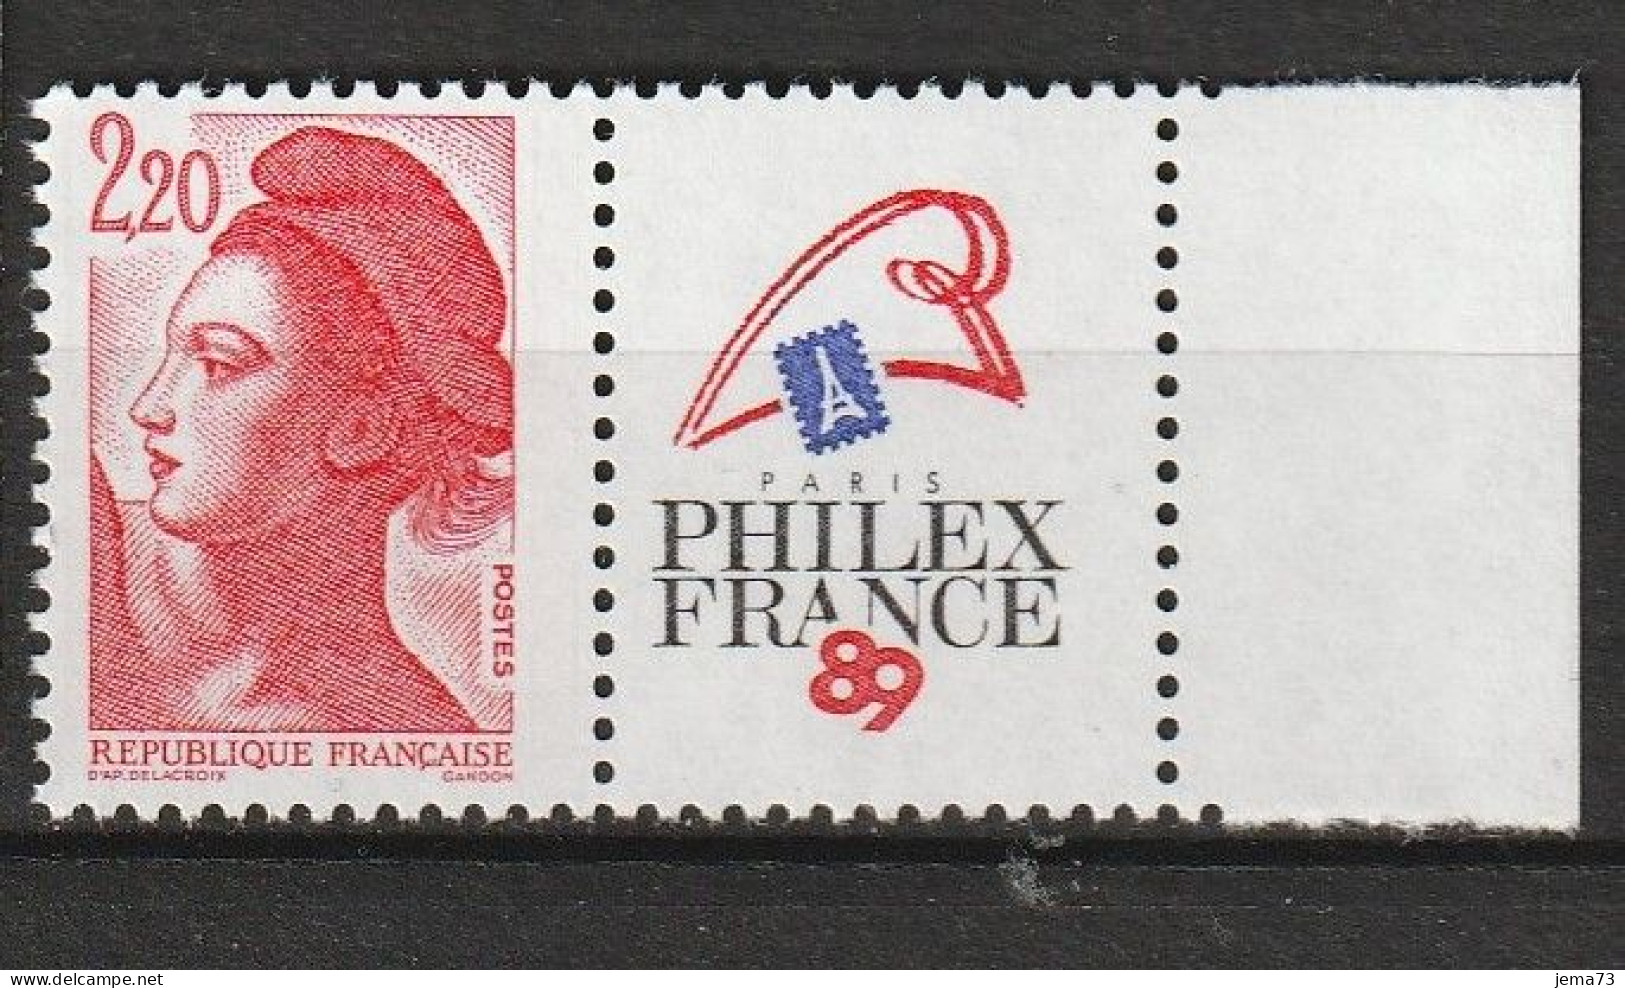 N° 2461 Philexfrance 89Exposition Philatélique Mondiale à Paris; Beau Timbre Neuf - Neufs